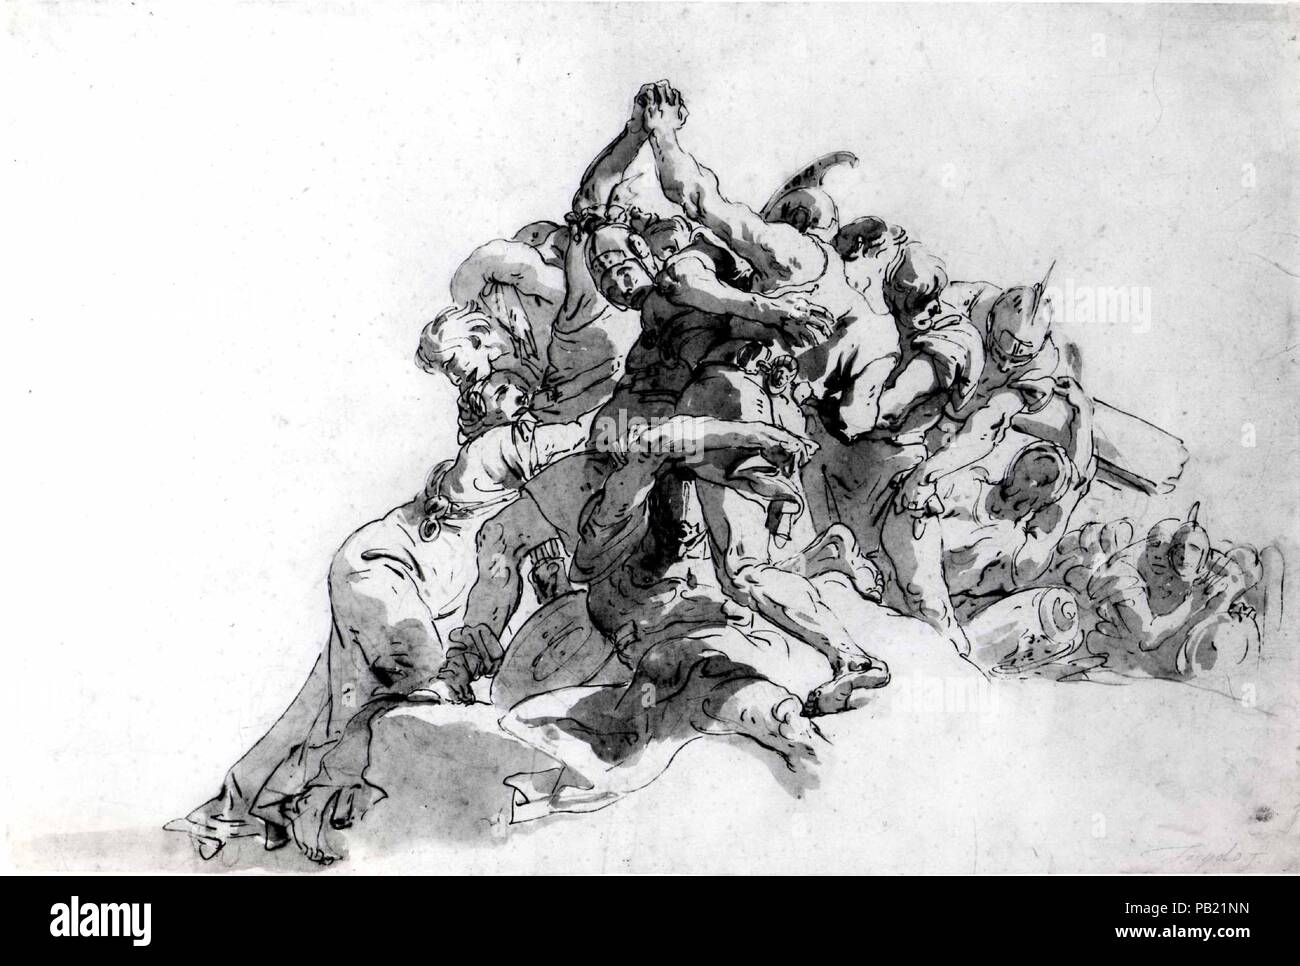 Des soldats qui essayaient d'empêcher deux hommes de combats. Artiste : Giovanni Battista Tiepolo (Venise, Italie Madrid 1696-1770). Dimensions : 14 x 20 7/8 à 3/16. (36,1 x 53 cm). Date : 1728-30. Musée : Metropolitan Museum of Art, New York, USA. Banque D'Images